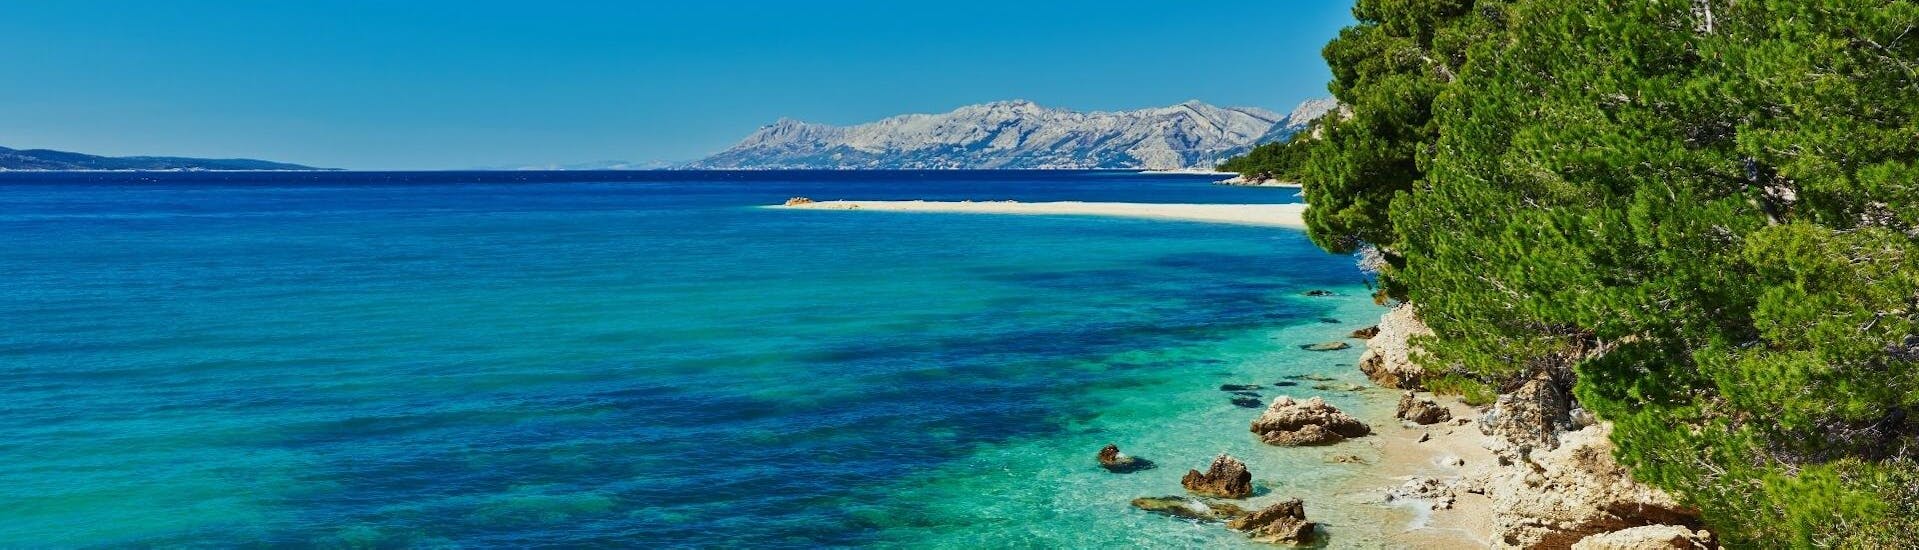 Sicht auf eine Insel in Kroatien während der Bootstour von Split nach Brač, Pakleni, Hvar & Šolta mit One Day Escape Split.